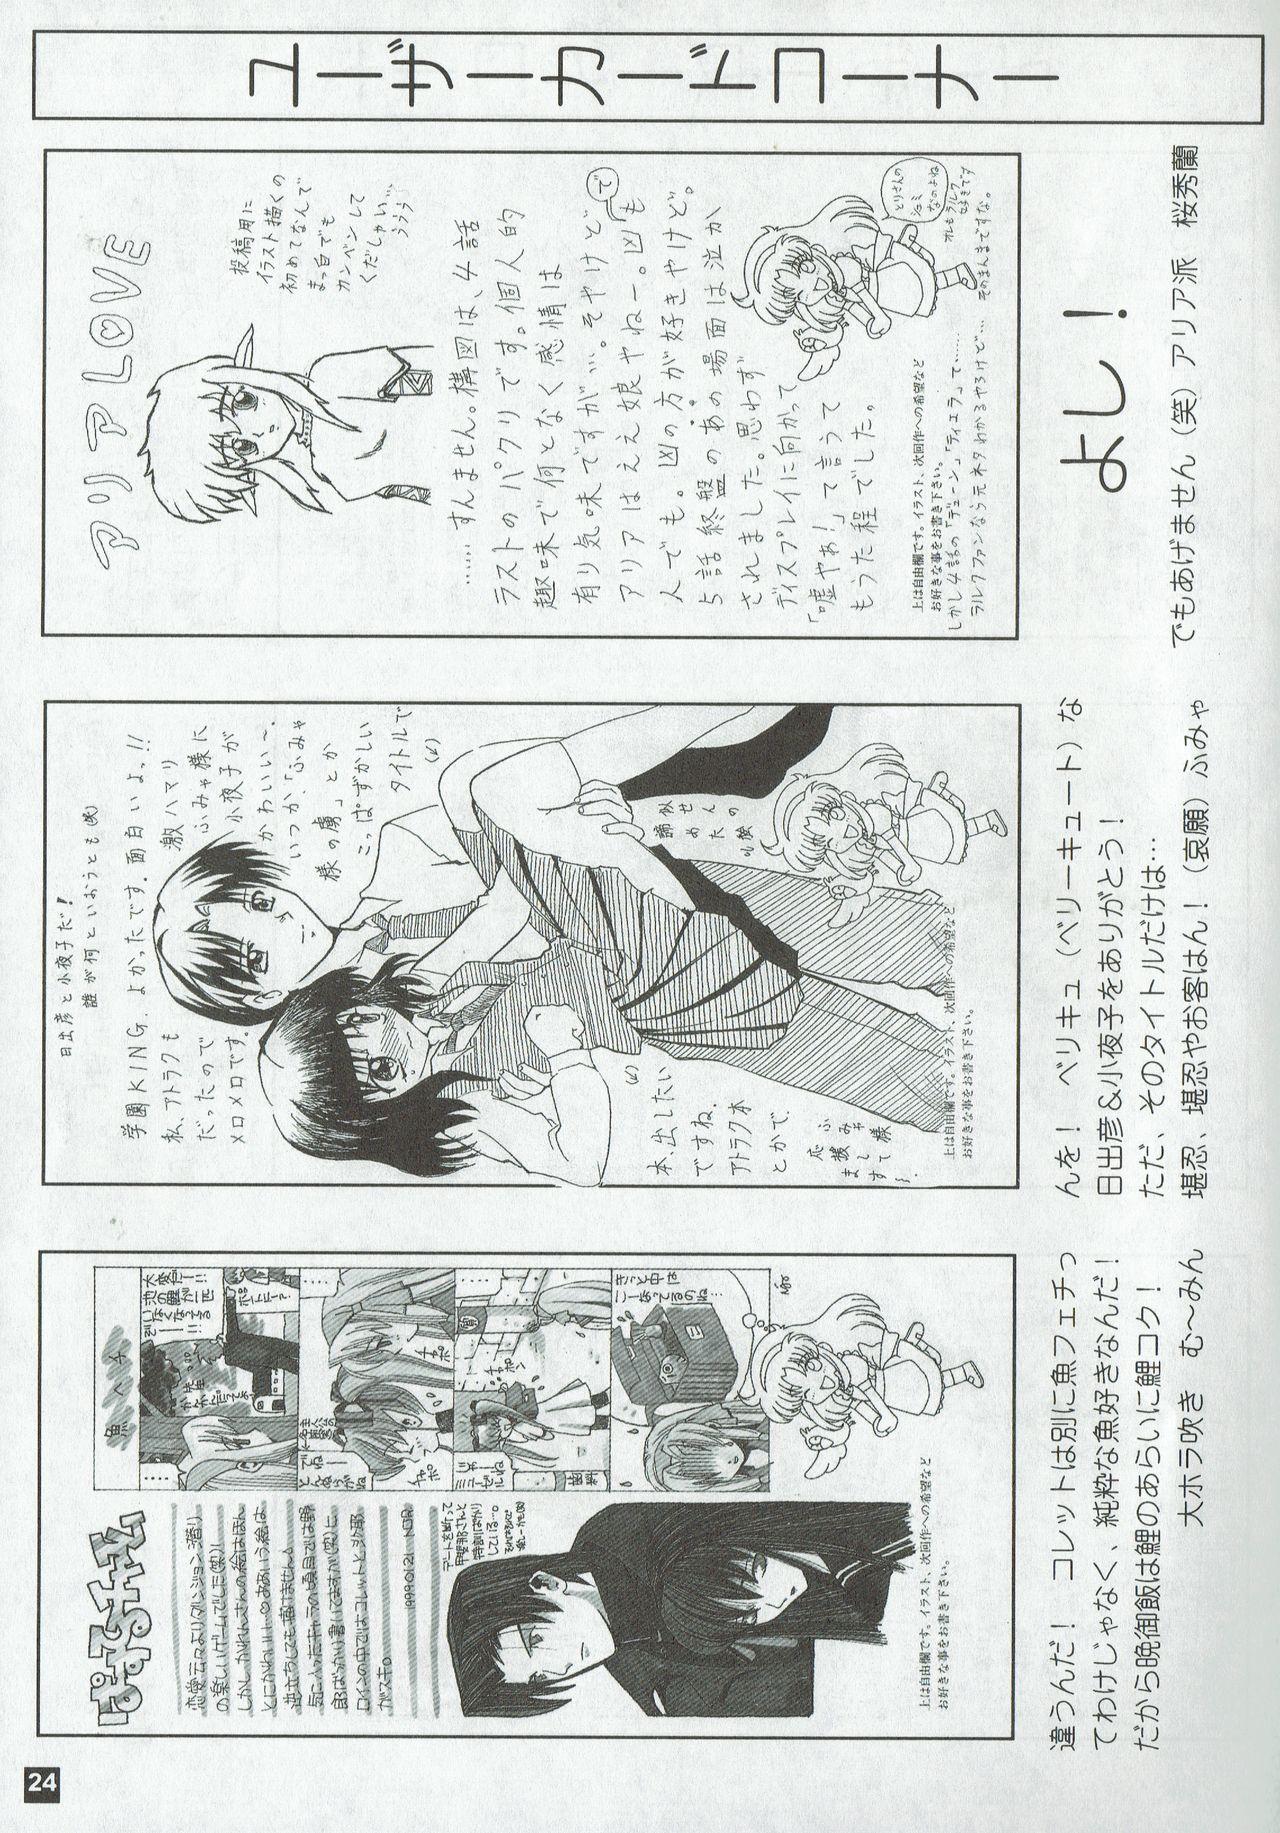 Arisu no Denchi Bakudan Vol. 04 23